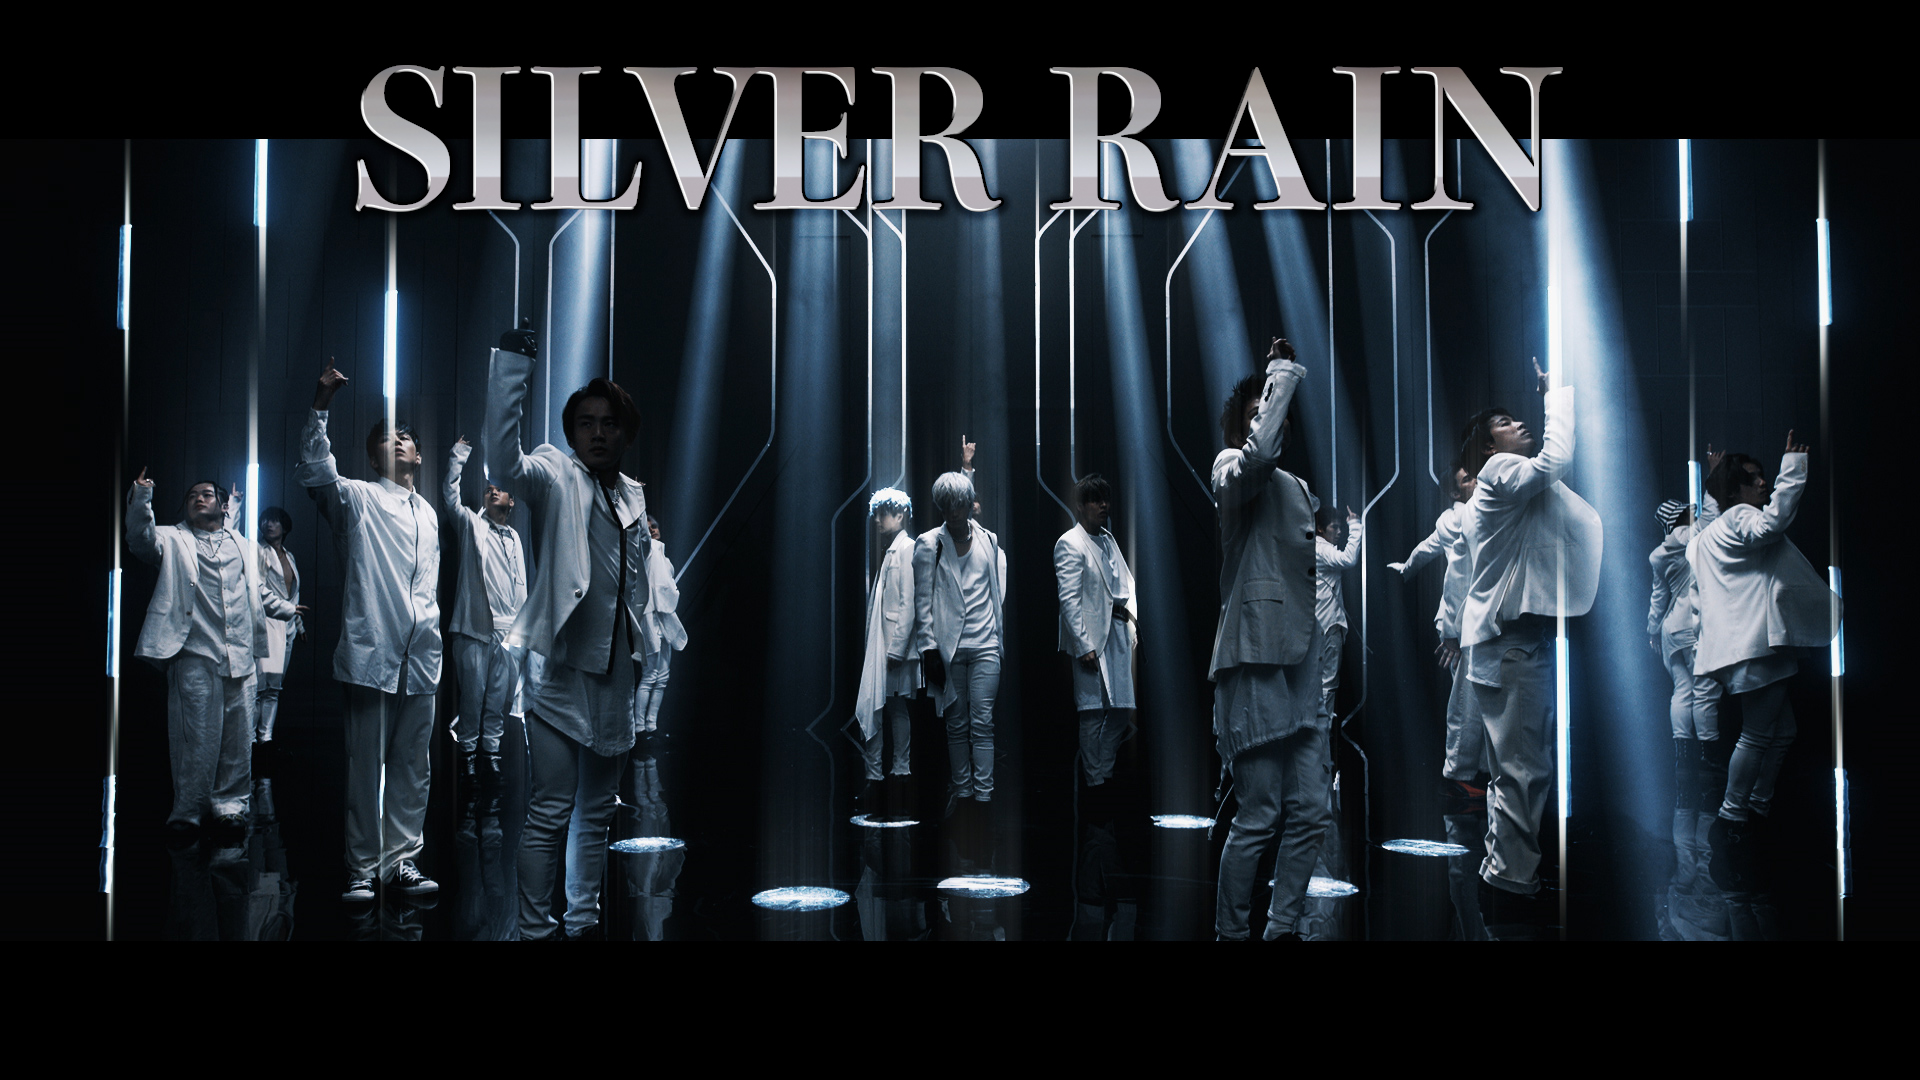 The Rampage Official 2 24 3rd Al Reboot リード曲 Silver Rain Mv解禁 今作は歌詞から感じた 闇を彷徨い やっと出会えた光 をテーマに制作し それぞれの表現で光を照らすべく 16人それぞれが主役となるシーンも詰め込ま